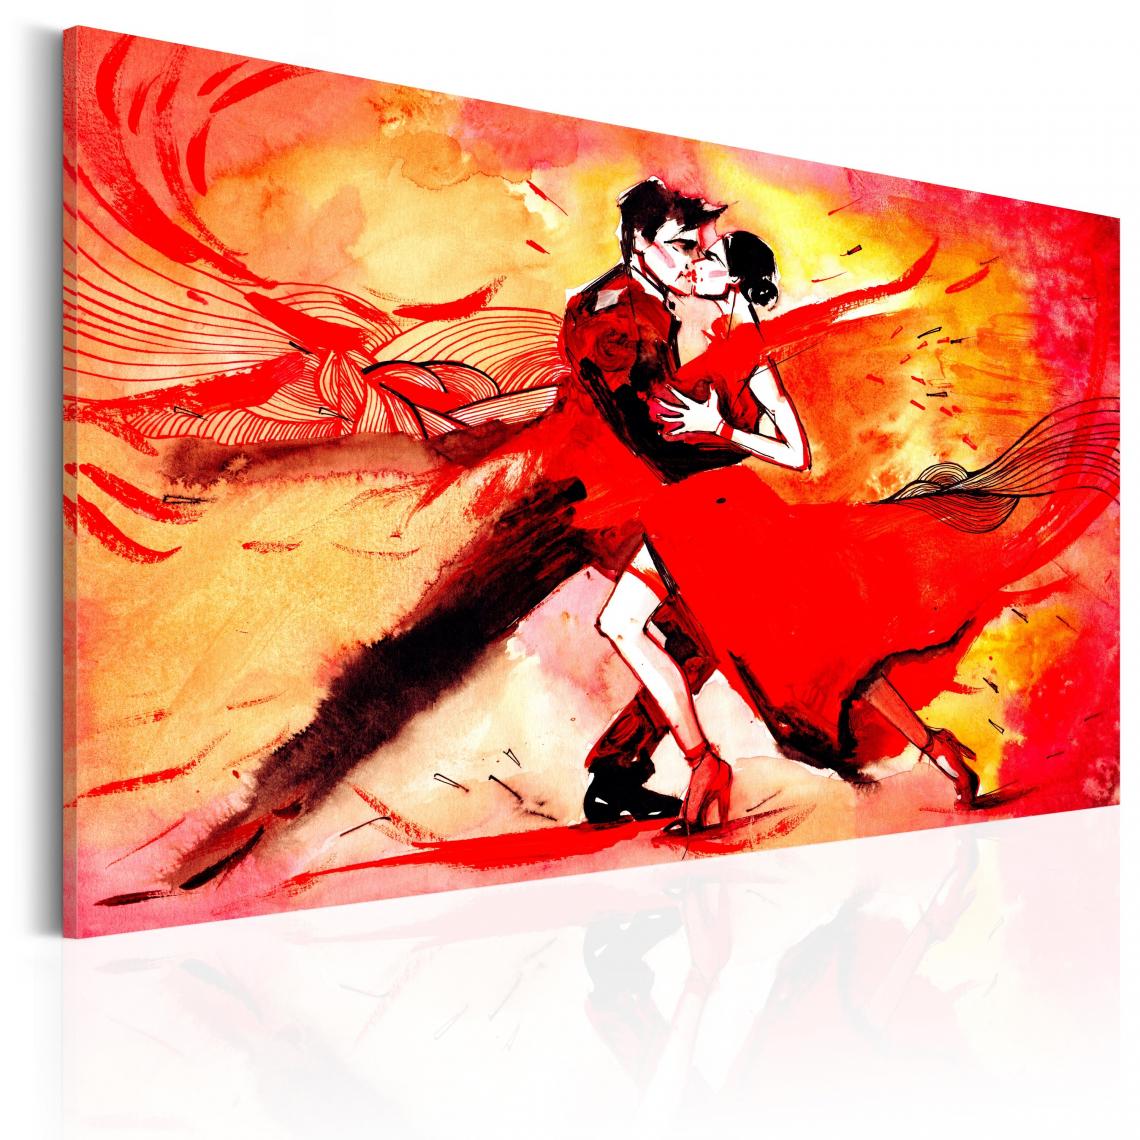 Decoshop26 - Tableau sur toile décoration murale image imprimée cadre en bois à suspendre Danse sensuelle 120x80 cm 11_0007599 - Tableaux, peintures